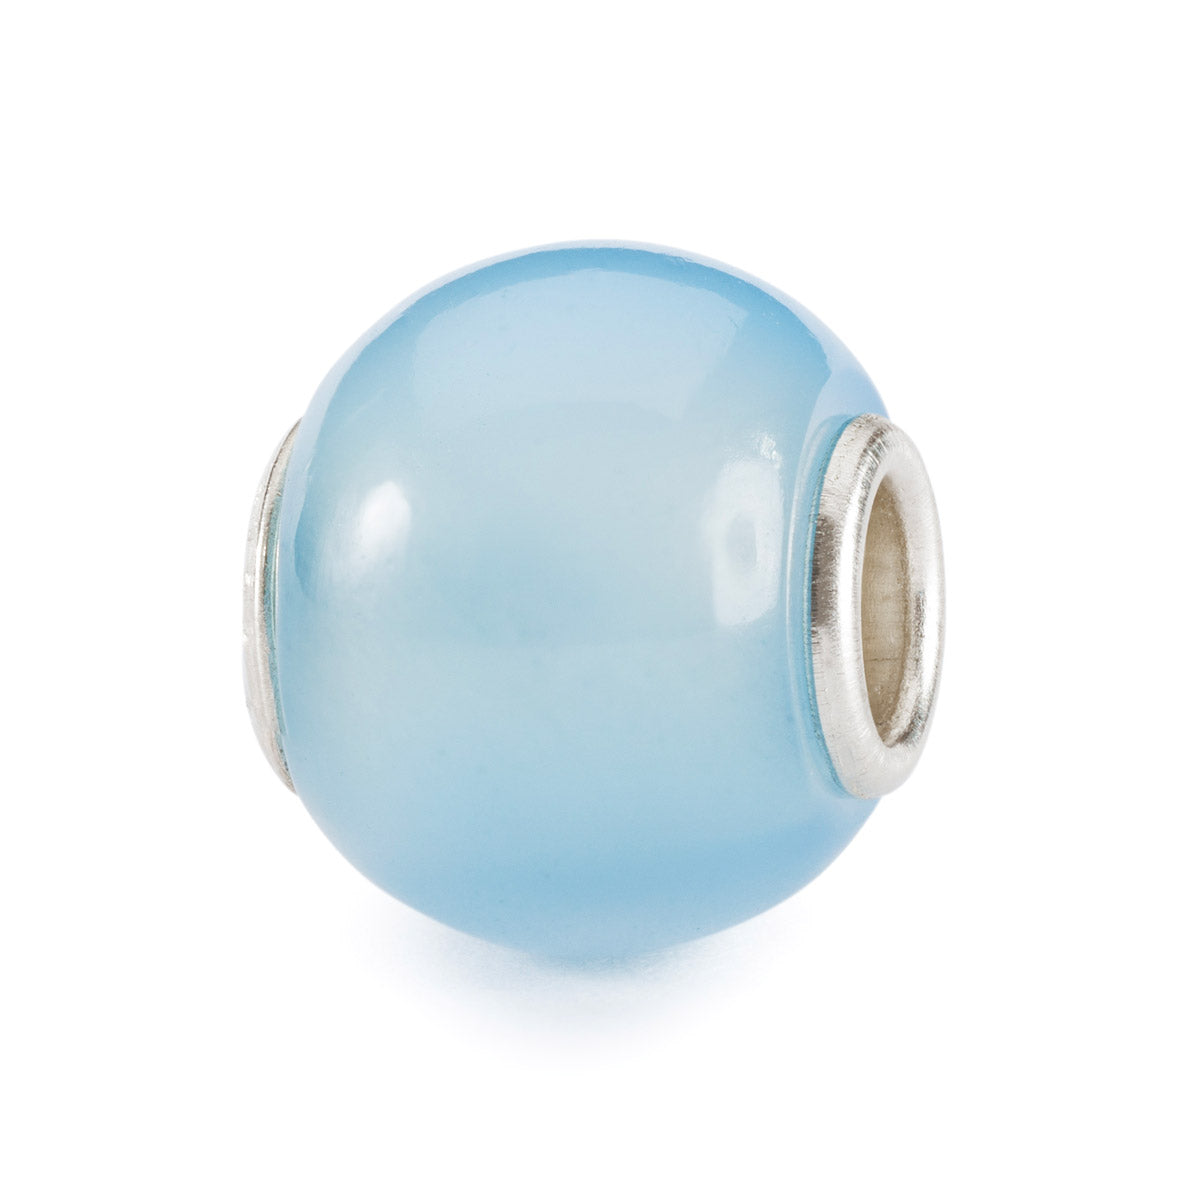 Agata Blu Chiaro Rotonda | Beads con pietra rotonda di colore blu chiaro. | TSTBE-00037